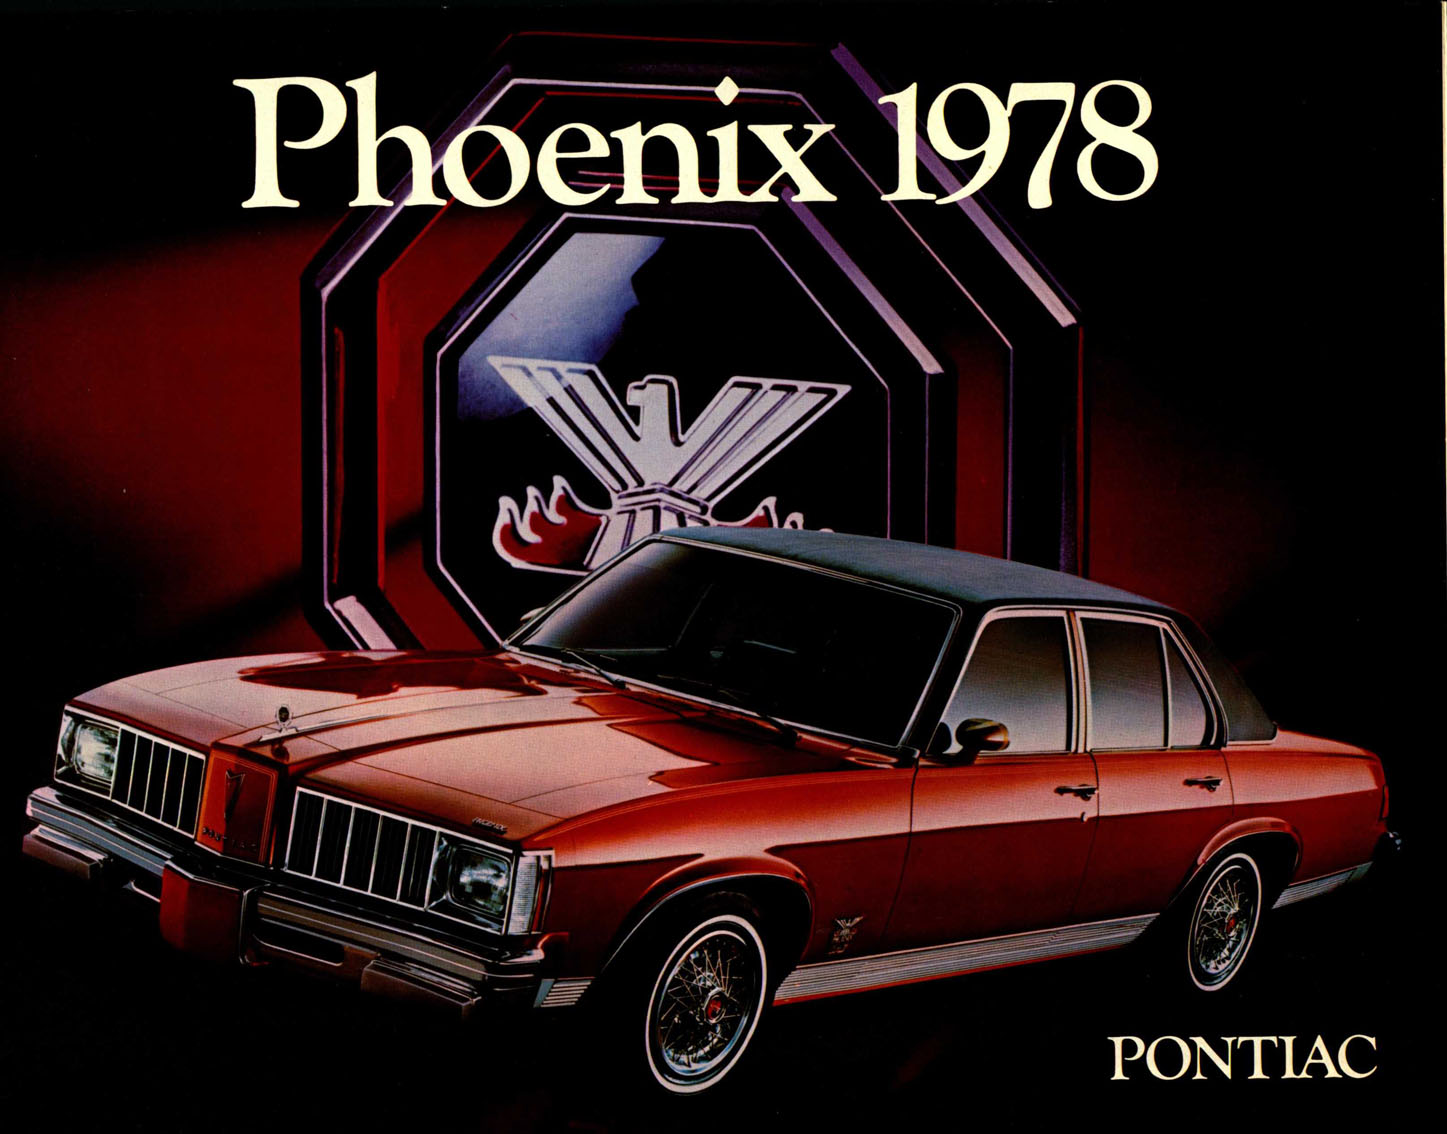 n_1978 Pontiac Phoenix (Cdn)-01.jpg